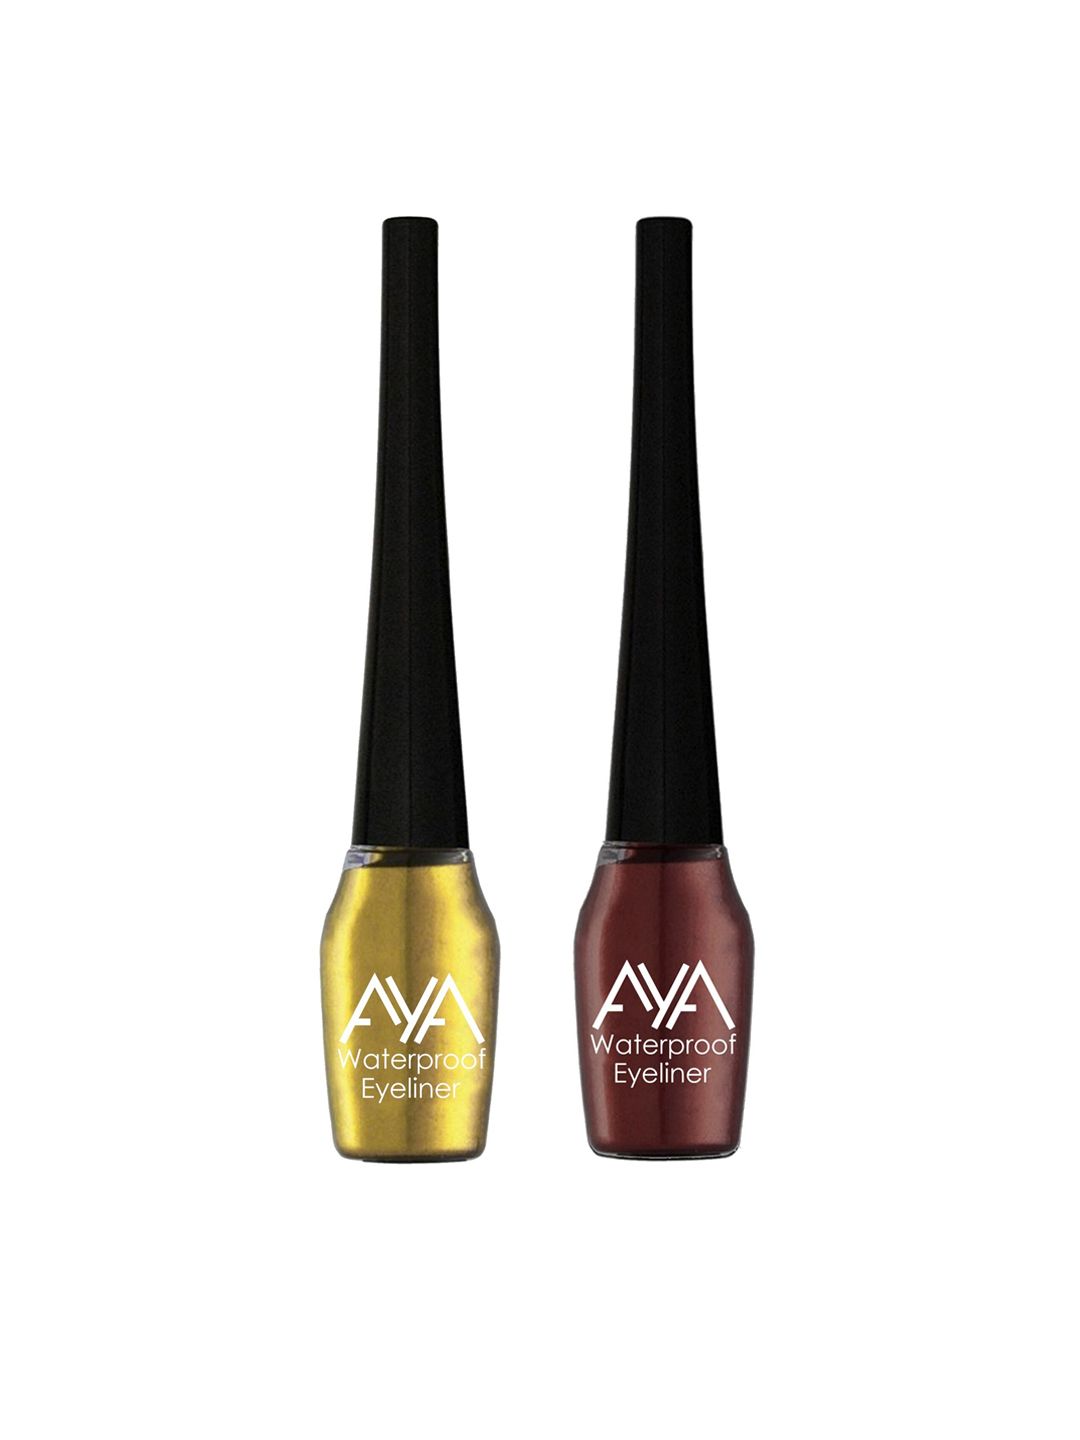 AYA Set of 2 Waterproof Eyeliner - Brown & Golden - 5 ml each Price in India